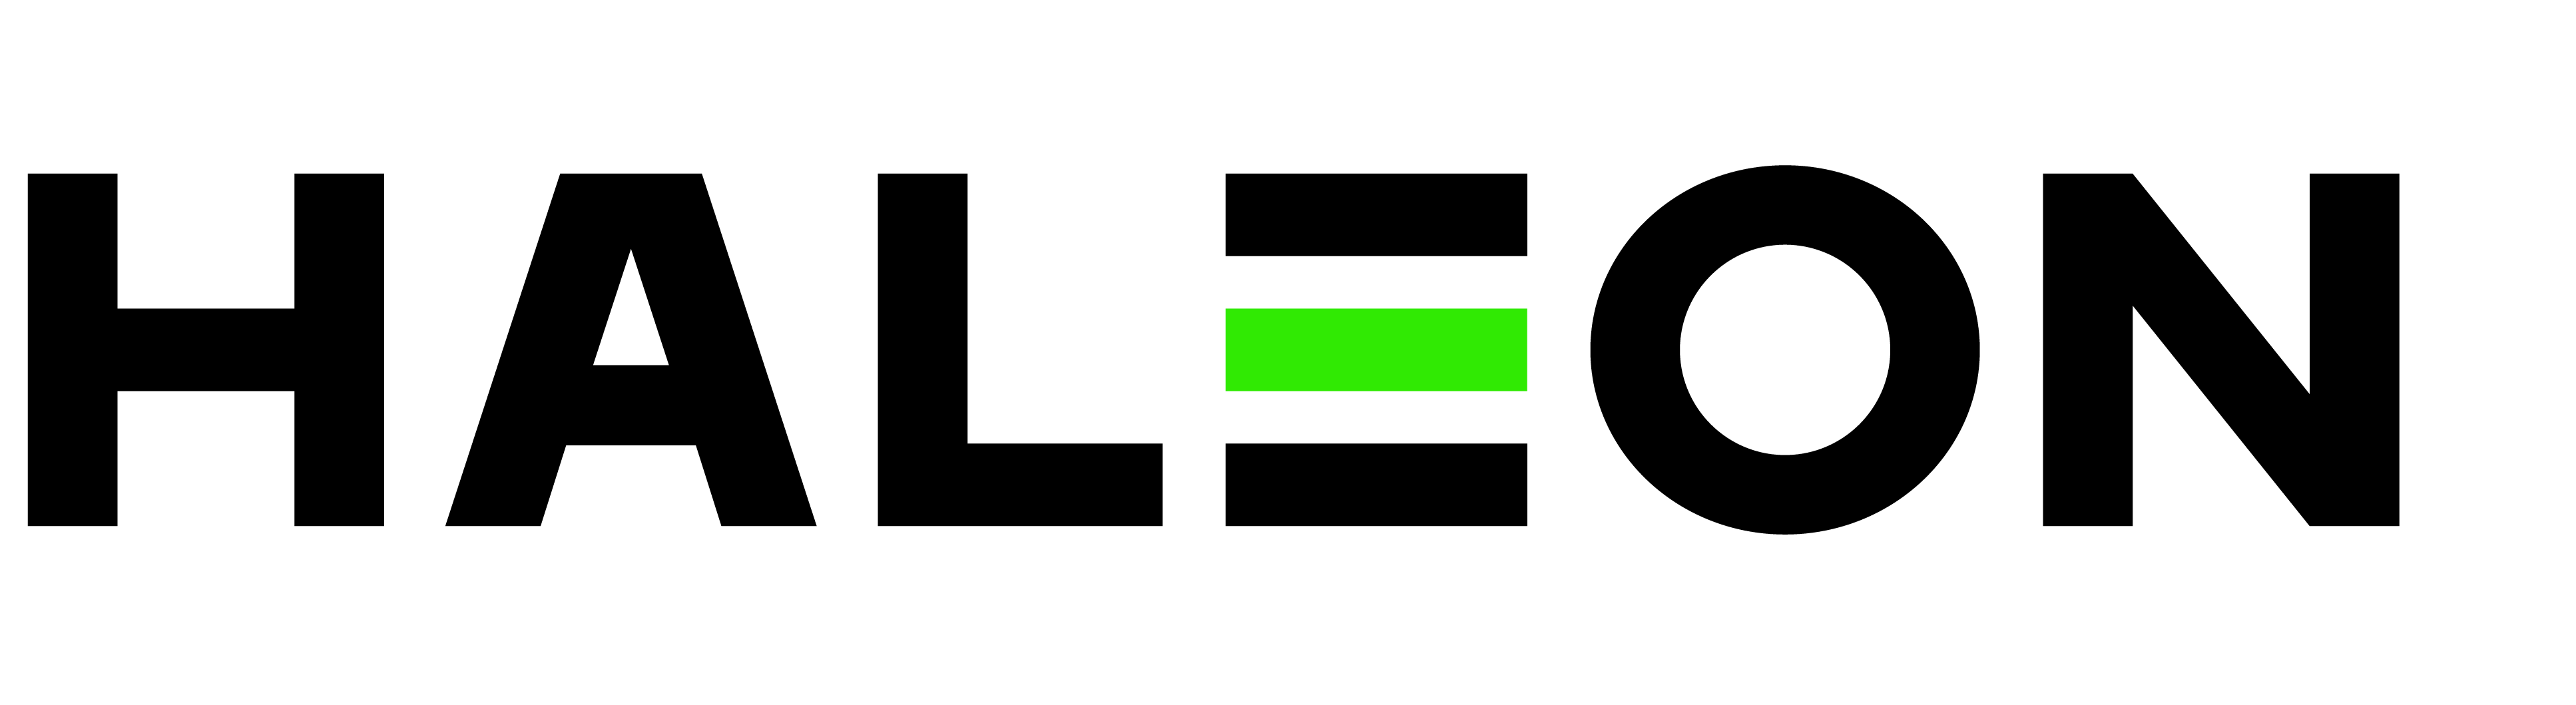 Haleon_Logo-2.png